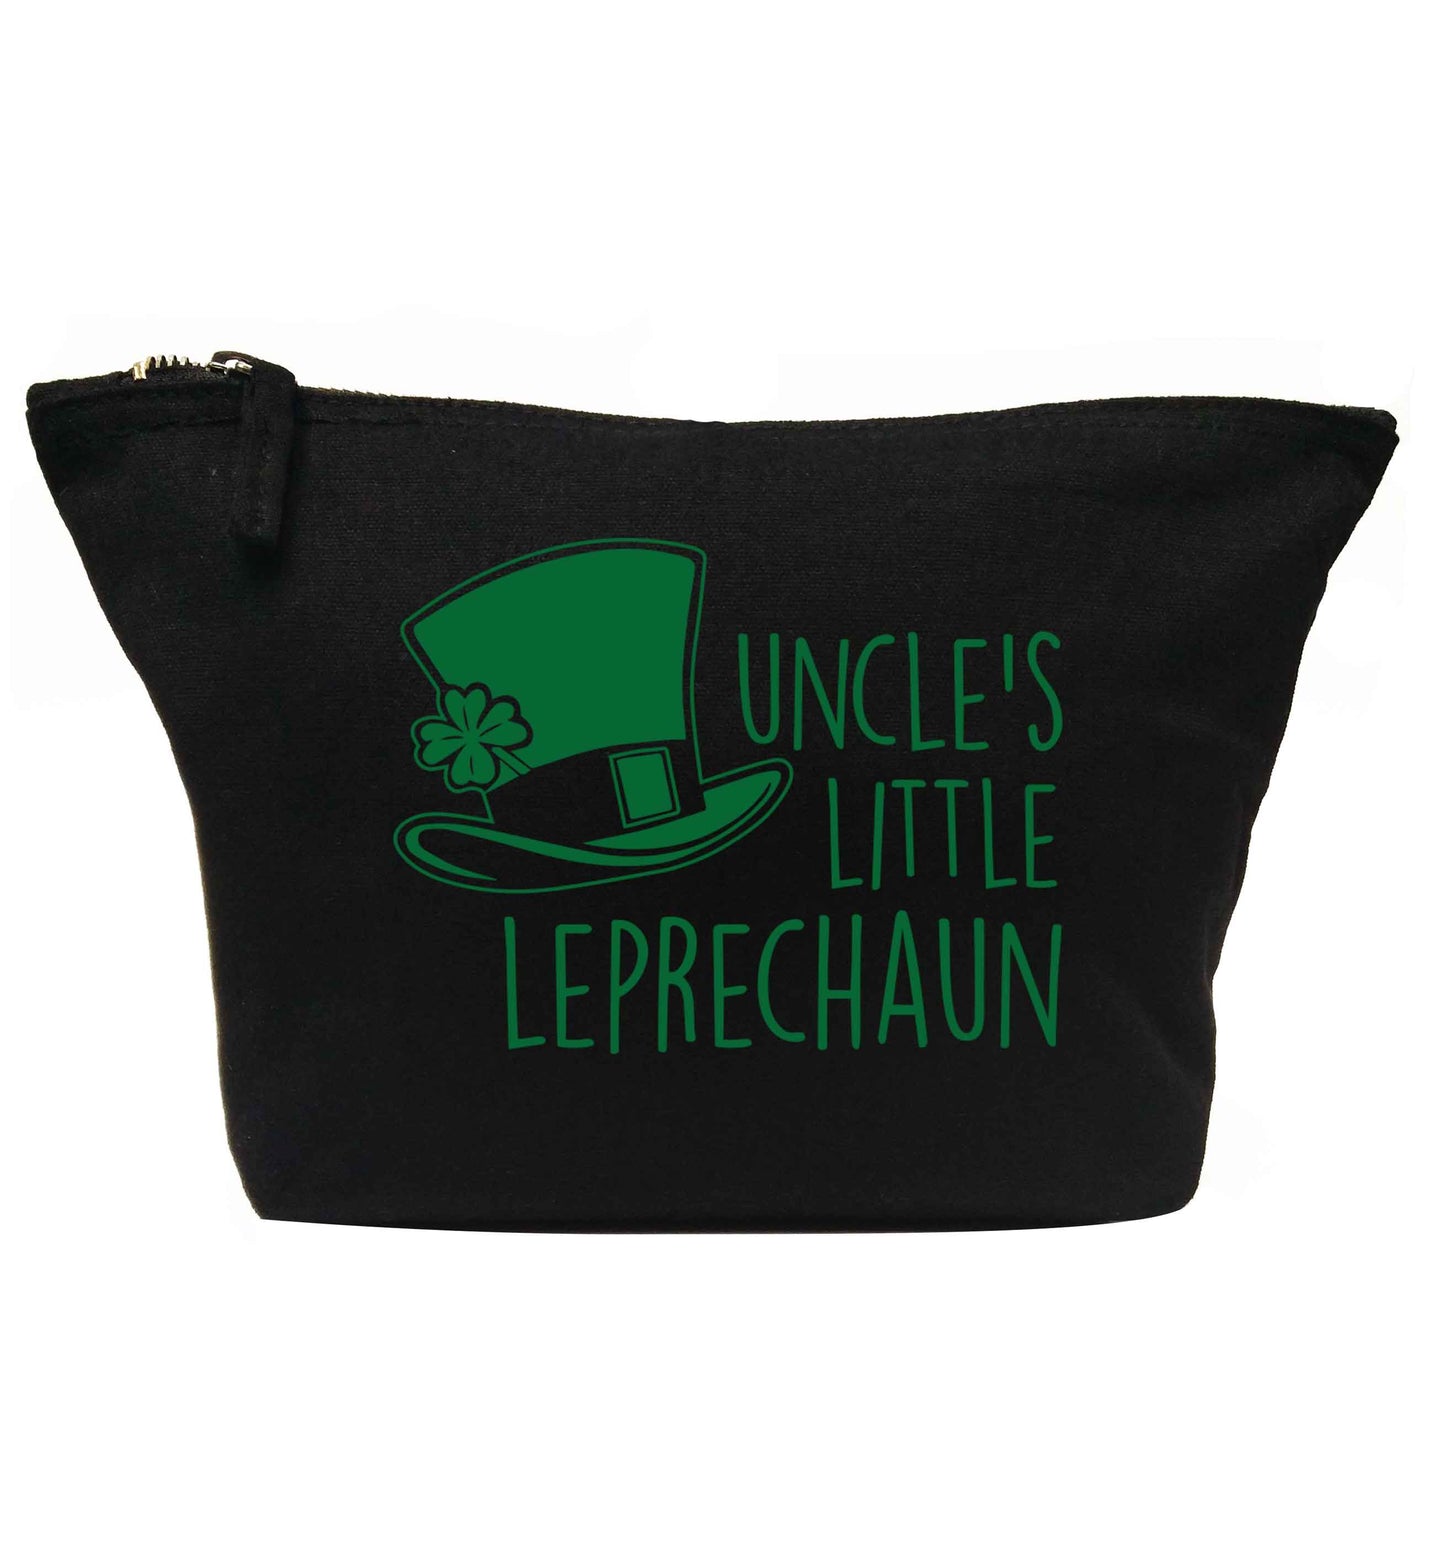 Uncles little leprechaun | Makeup / wash bag